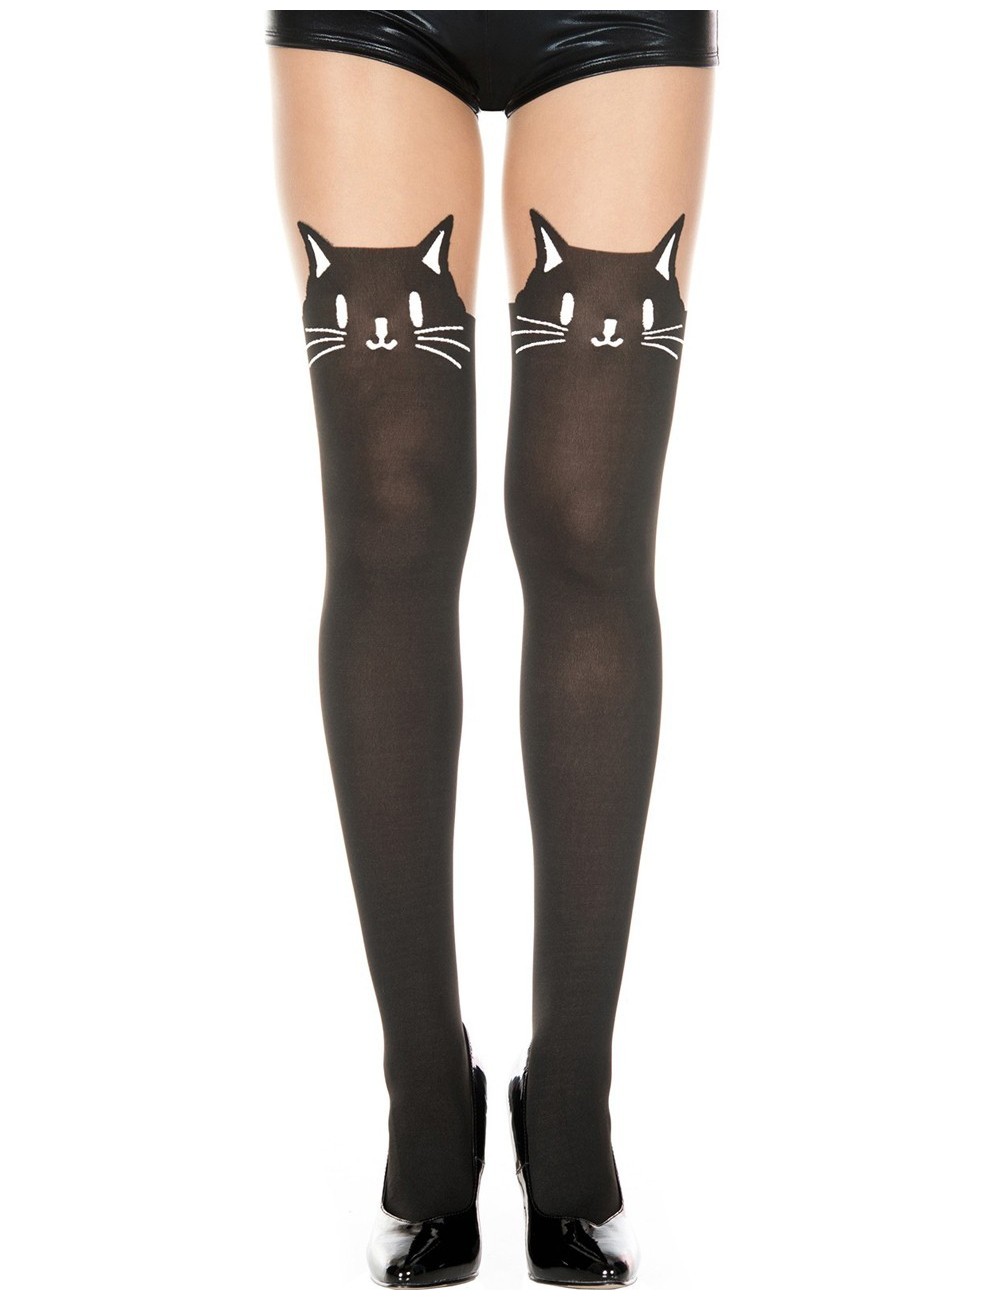 Lingerie - Collants - Collant semi opaque avec tête de chat fantaisie - MH7141BBE - Music Legs